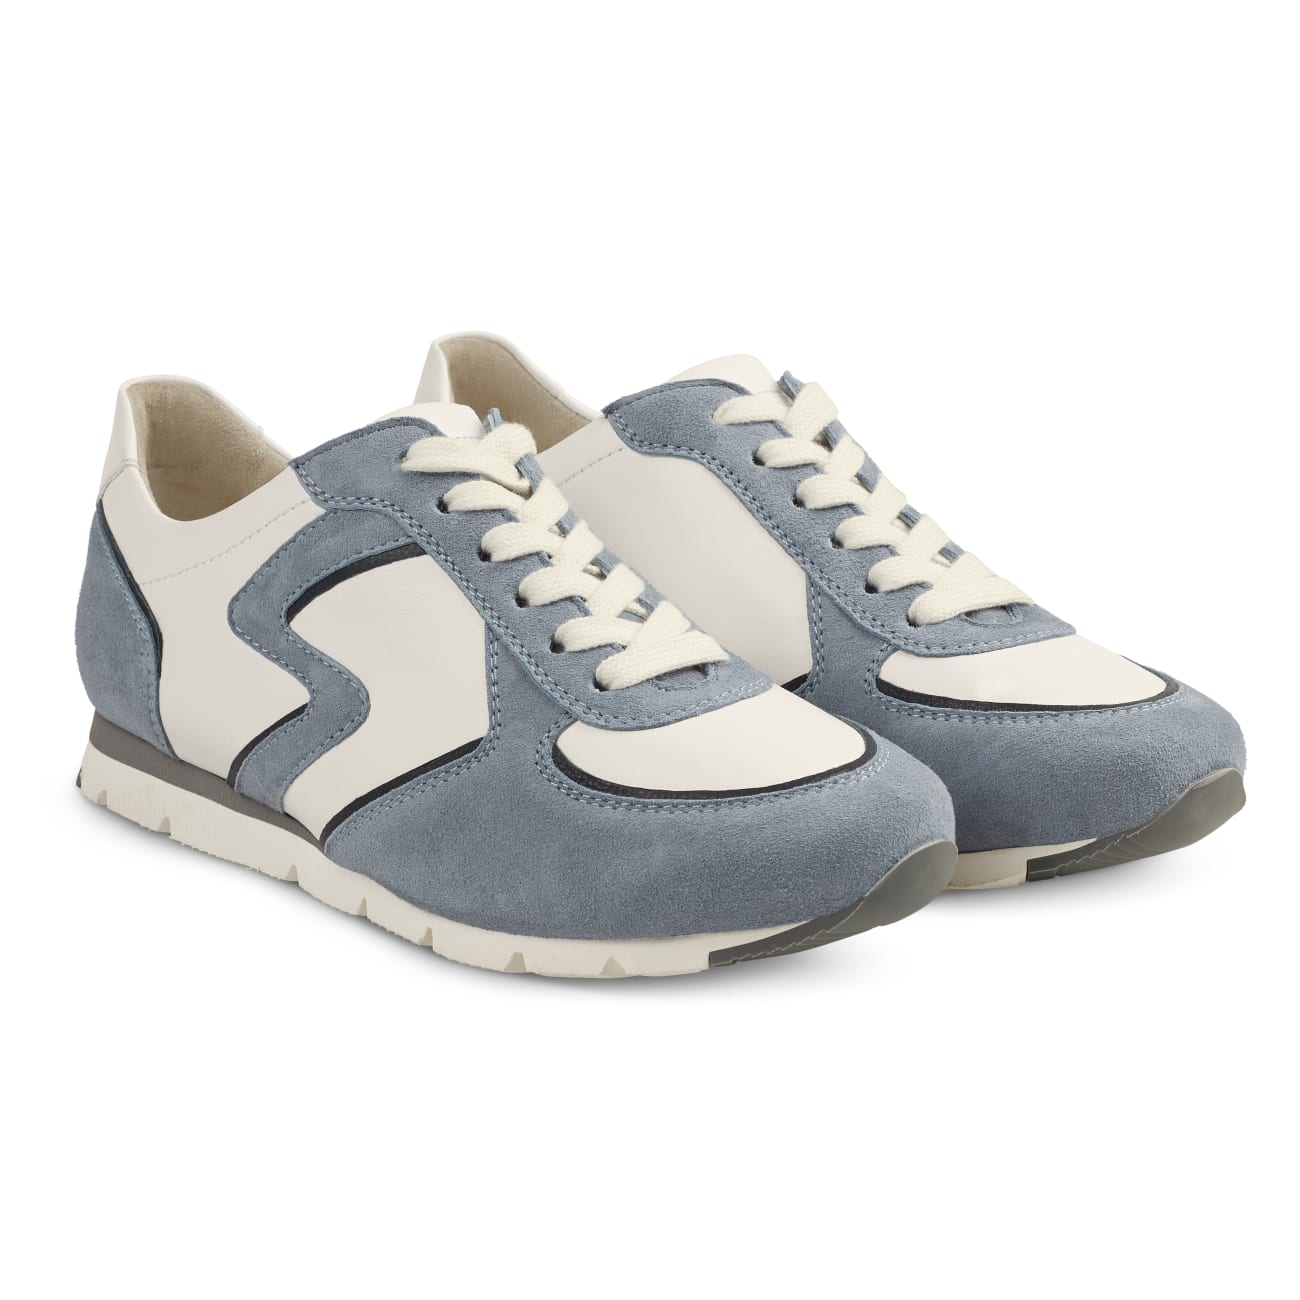 Premium Sneaker Colourline Weiß/Hellblau – modischer und bequemer Schuh für Hallux valgus und empfindliche Füße von LaShoe.de